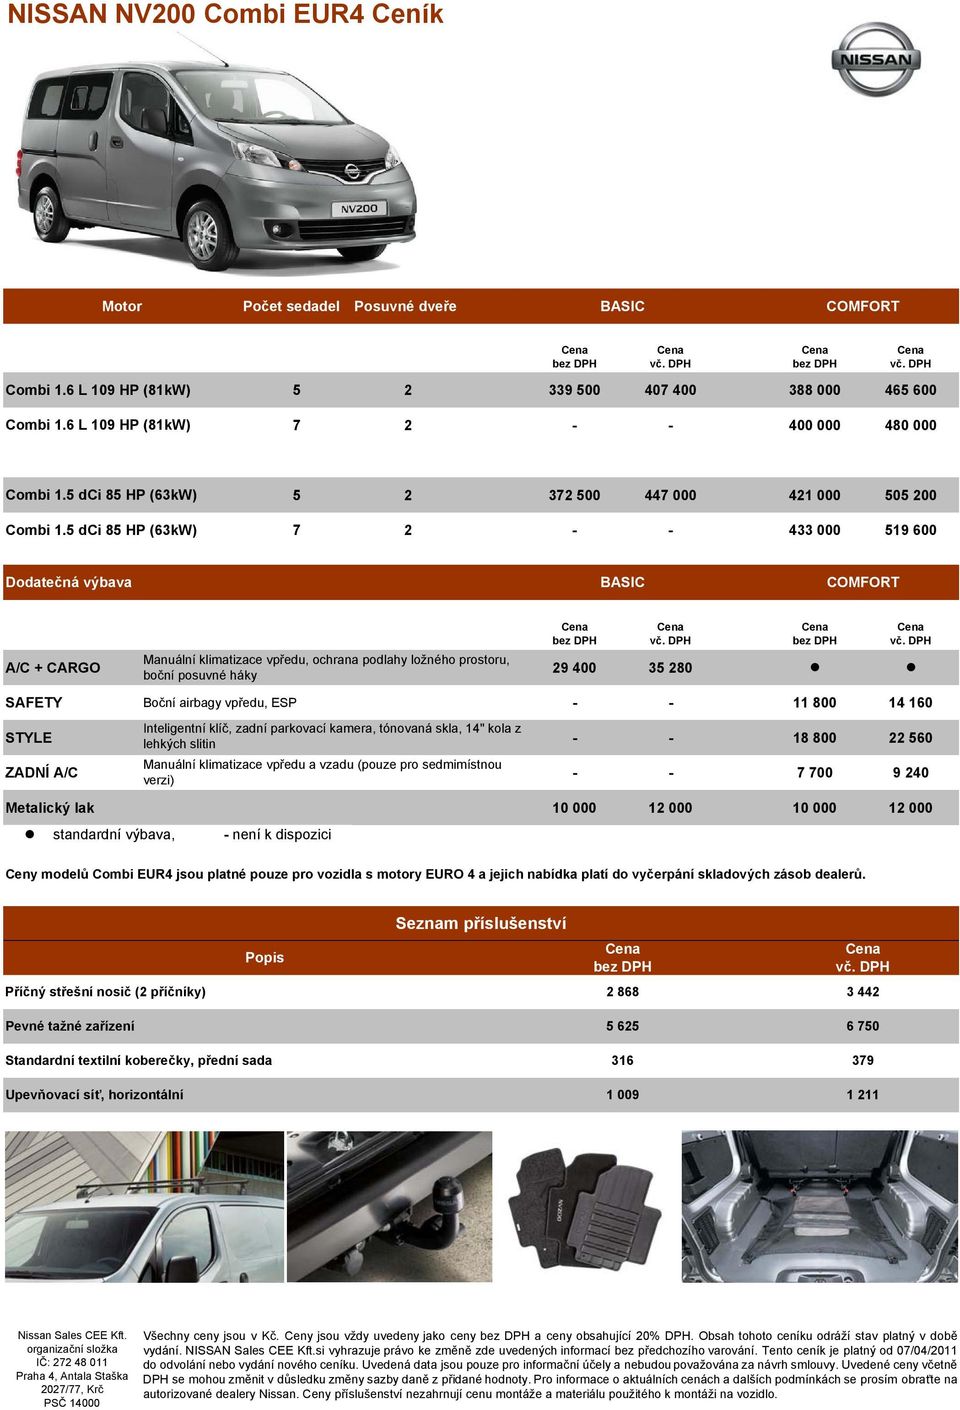 dispozici Ceny odelů Cobi EUR jsou platné pouze pro vozidla s otory EURO a jejich nabídka platí do vyčerpání skladových zásob dealerů.